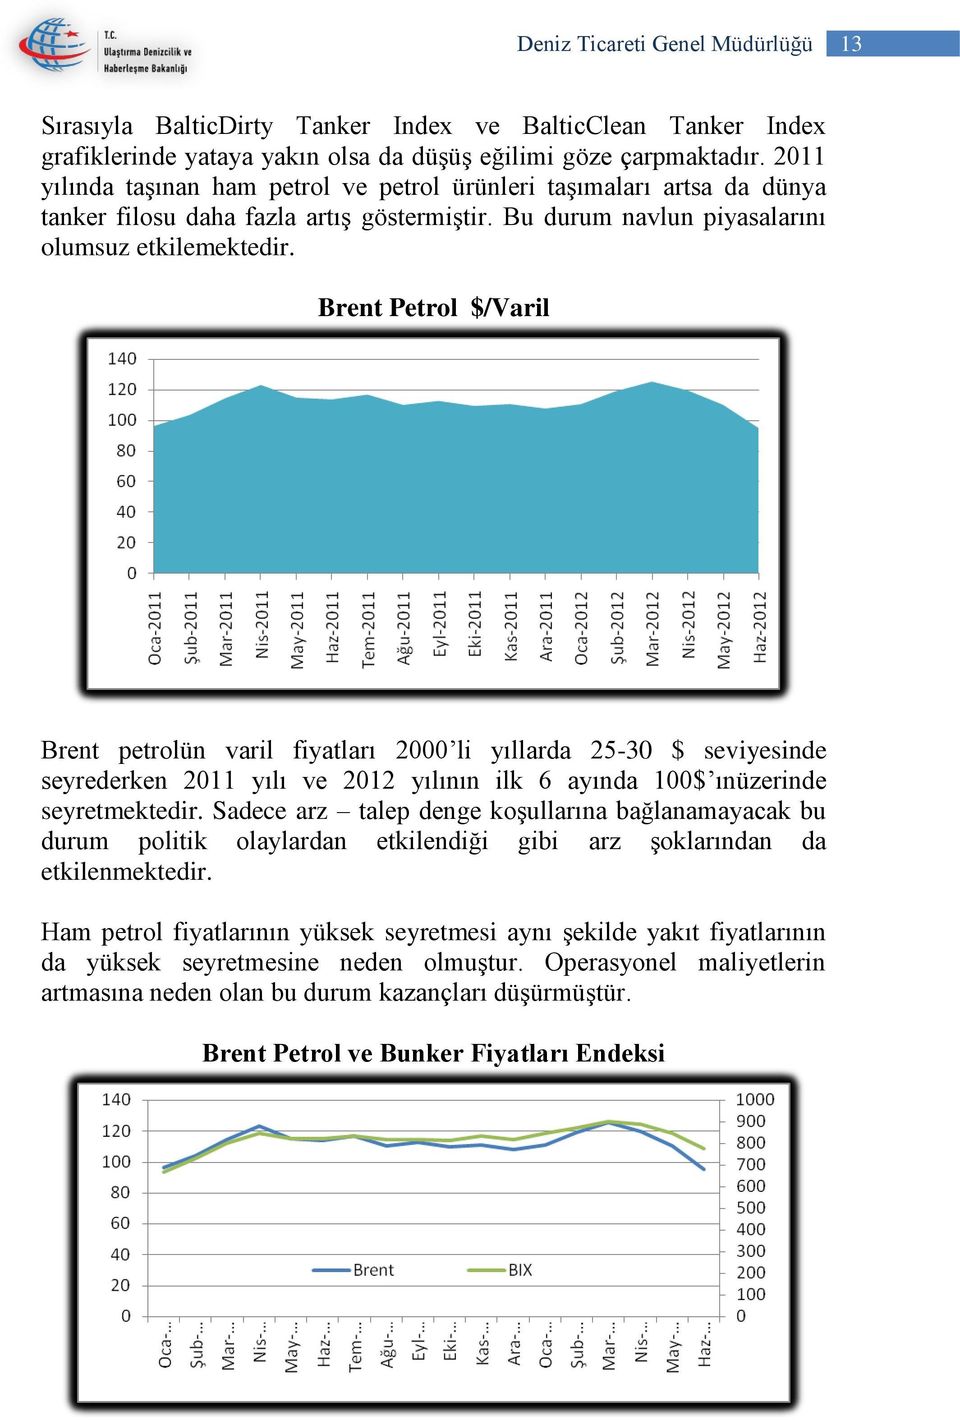 Brent Petrol $/Varil Brent petrolün varil fiyatları 2000 li yıllarda 25-30 $ seviyesinde seyrederken 2011 yılı ve 2012 yılının ilk 6 ayında 100$ ınüzerinde seyretmektedir.